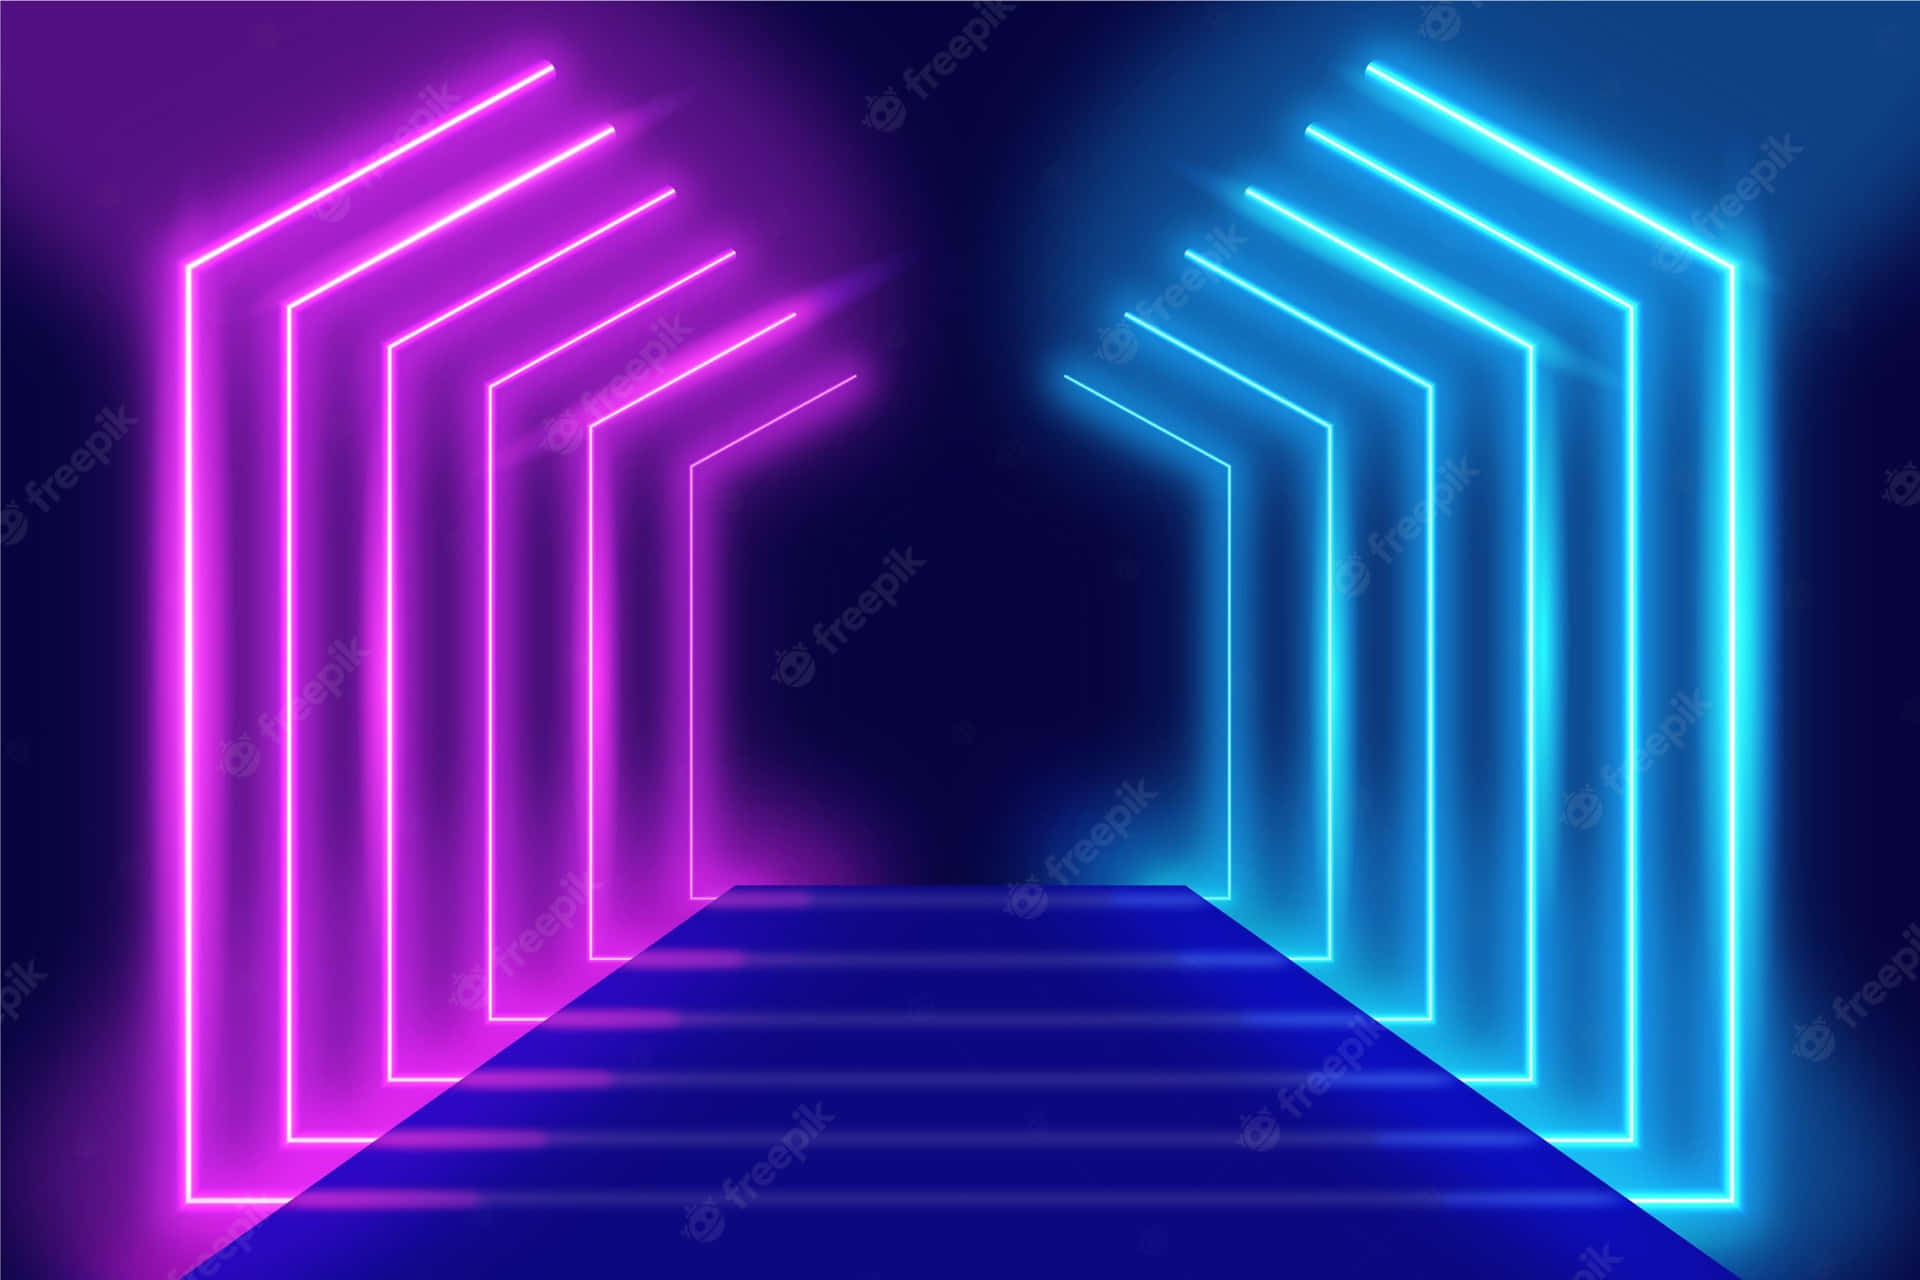 Neonlichttunnelmit Blauen Und Pinken Neonlichtern. Wallpaper